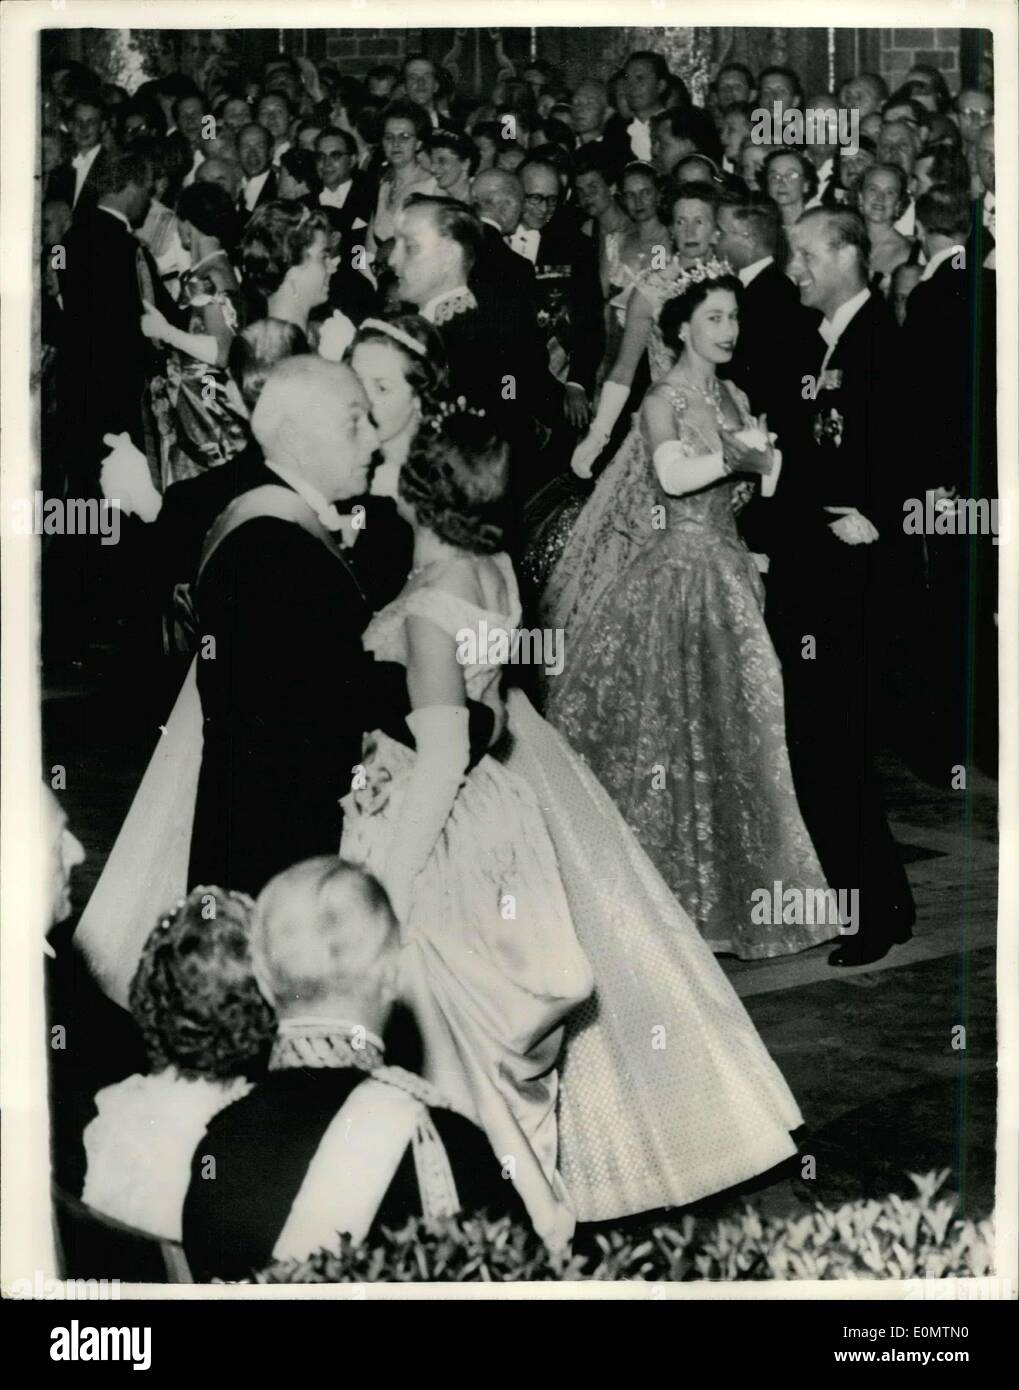 Giugno 18, 1956 - la regina e il duca danza al Municipio di Stoccolma sfera: La Regina fine del Duca di Edimburgo dancing circondato da altri ospiti - quando hanno frequentato la sfera dell'ordine Amaramt - tenuto in loro onore presso il Municipio di Stoccolma. Foto Stock